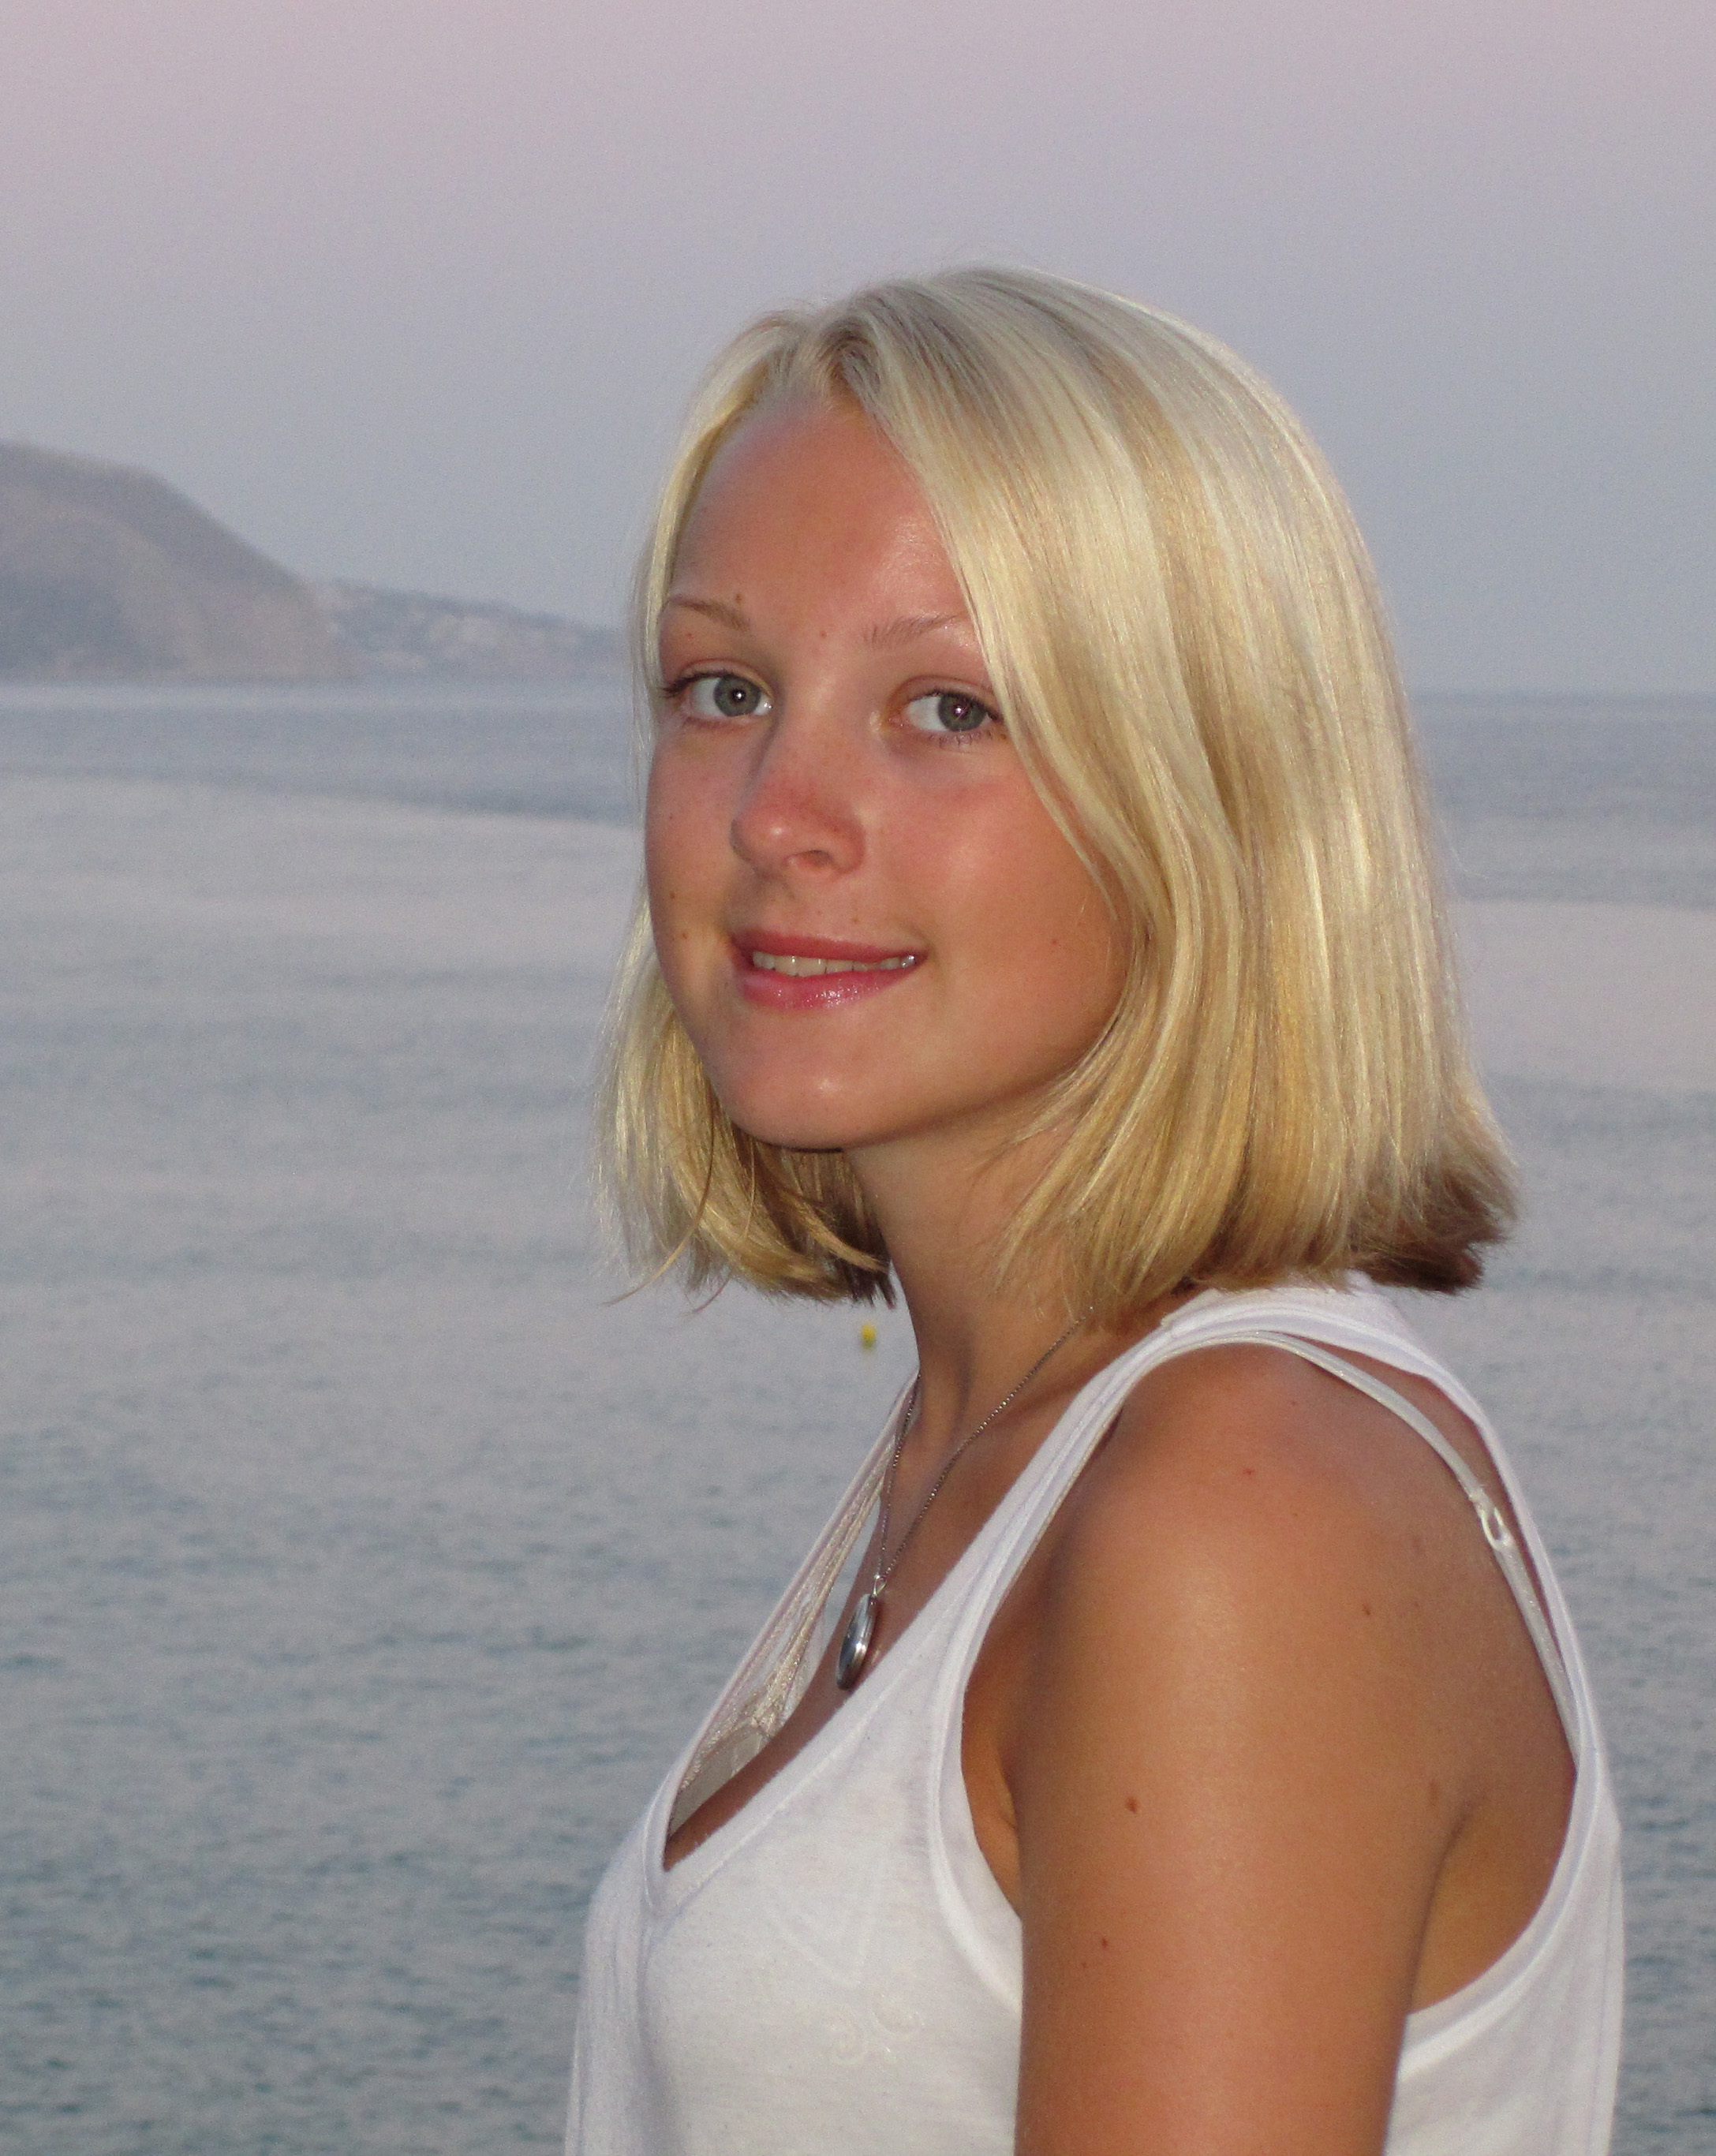 16-åriga Margrethe Bøyum Kløven från Bærum sköts ihjäl.